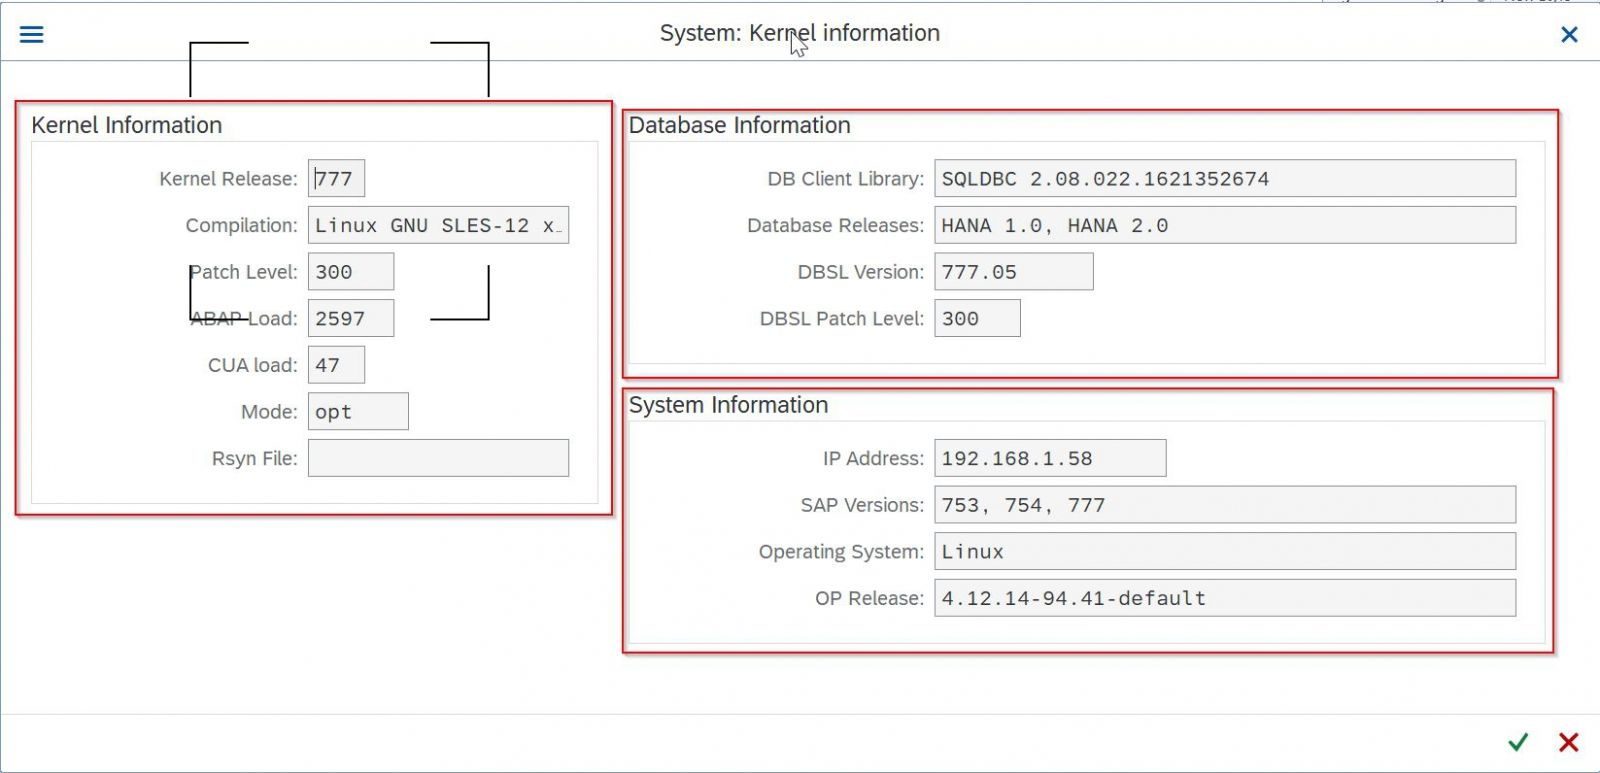 System Kernel Information